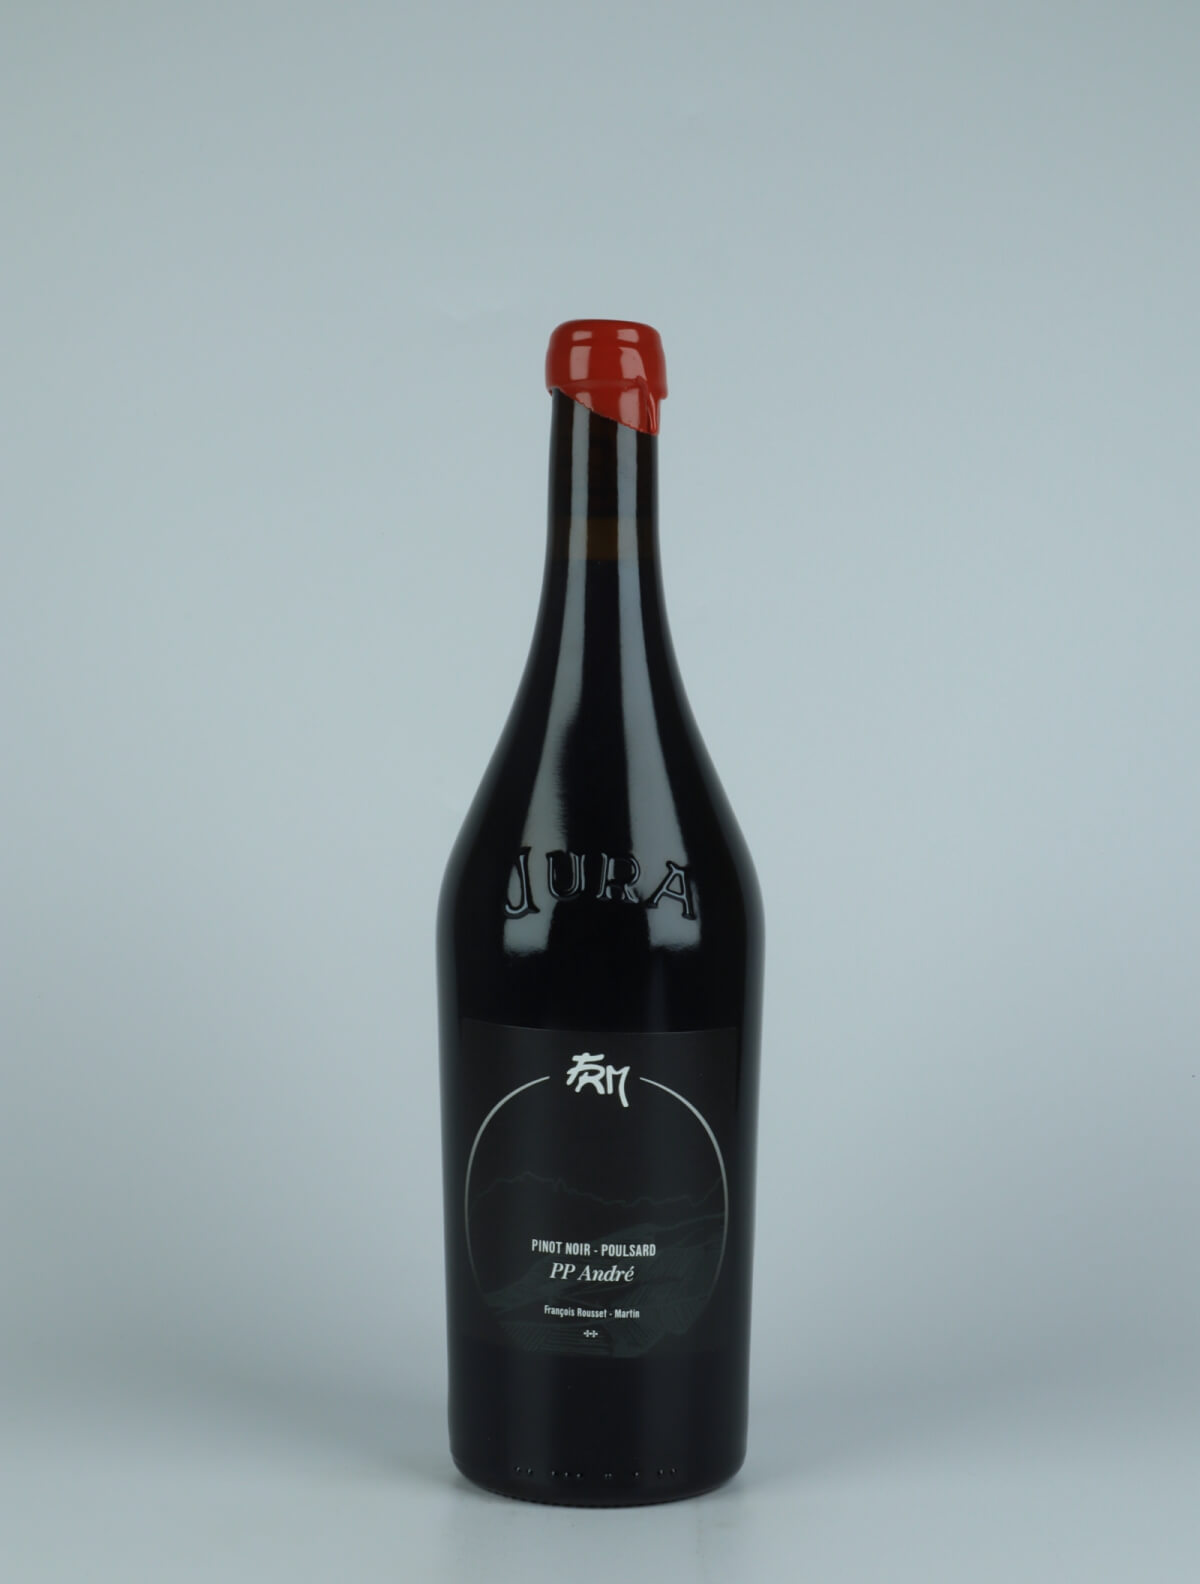 En flaske 2019 PP André - Poulsard & Pinot Noir Rødvin fra François Rousset-Martin, Jura i Frankrig